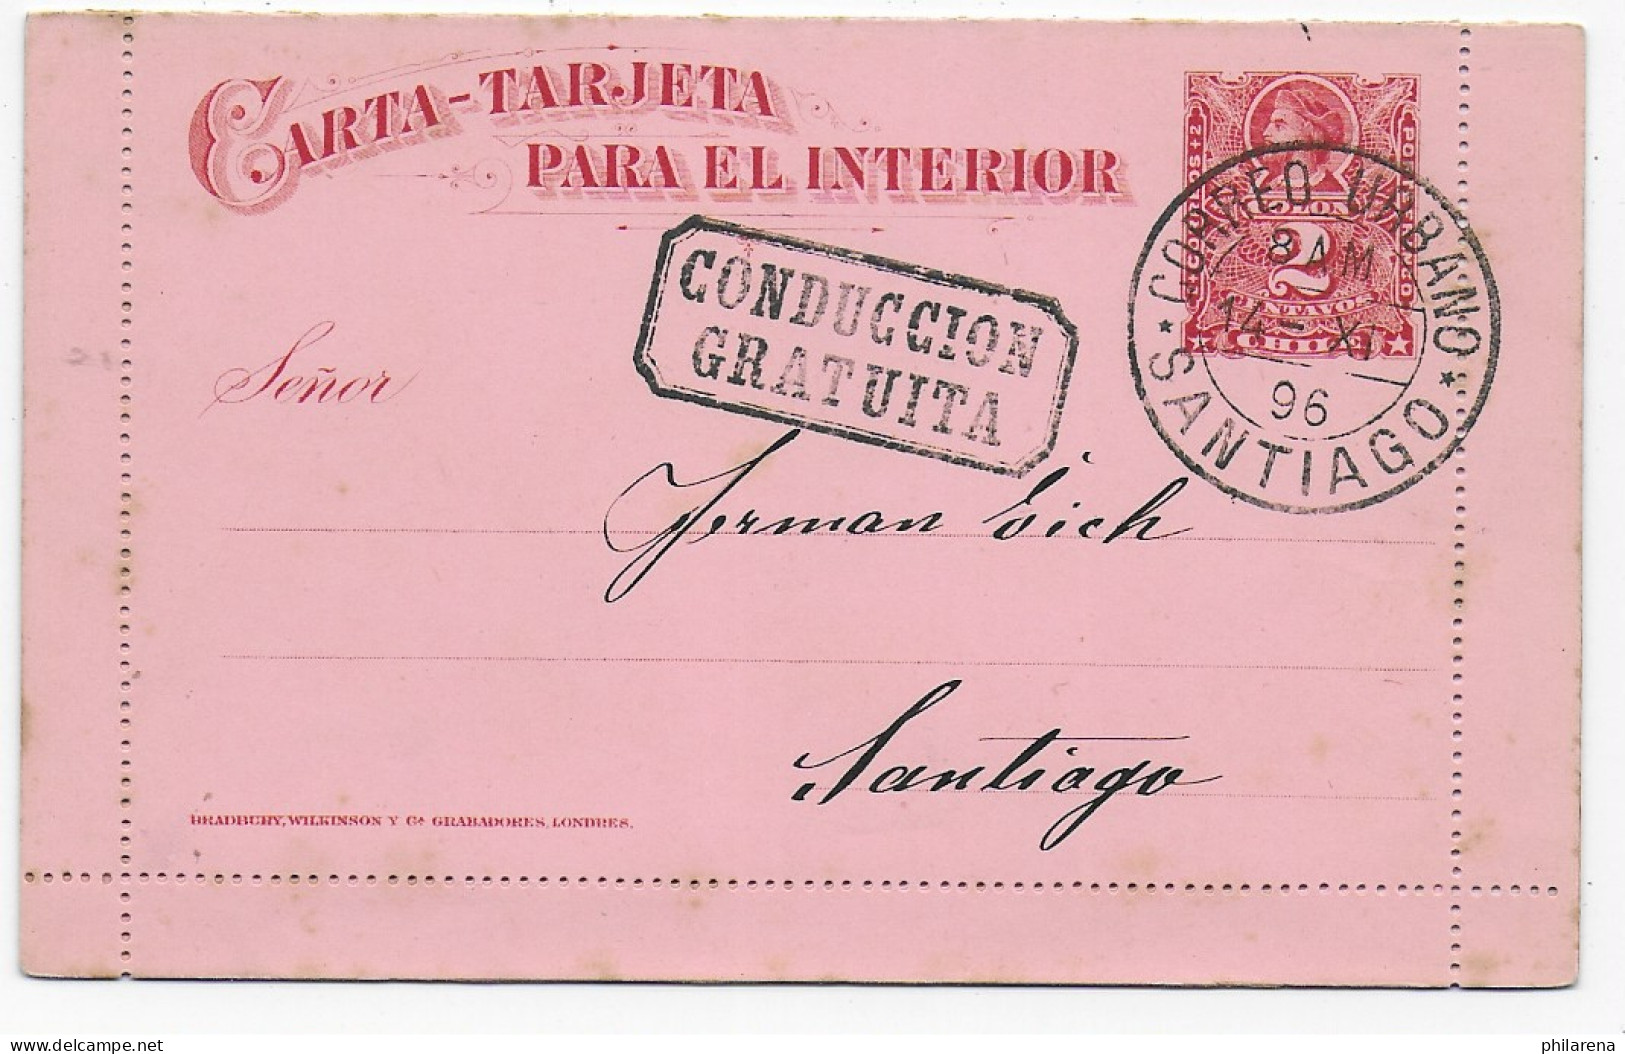 Kartenbrief Santiago 1896, Conduccion Gratuita, No Text Content - Chile